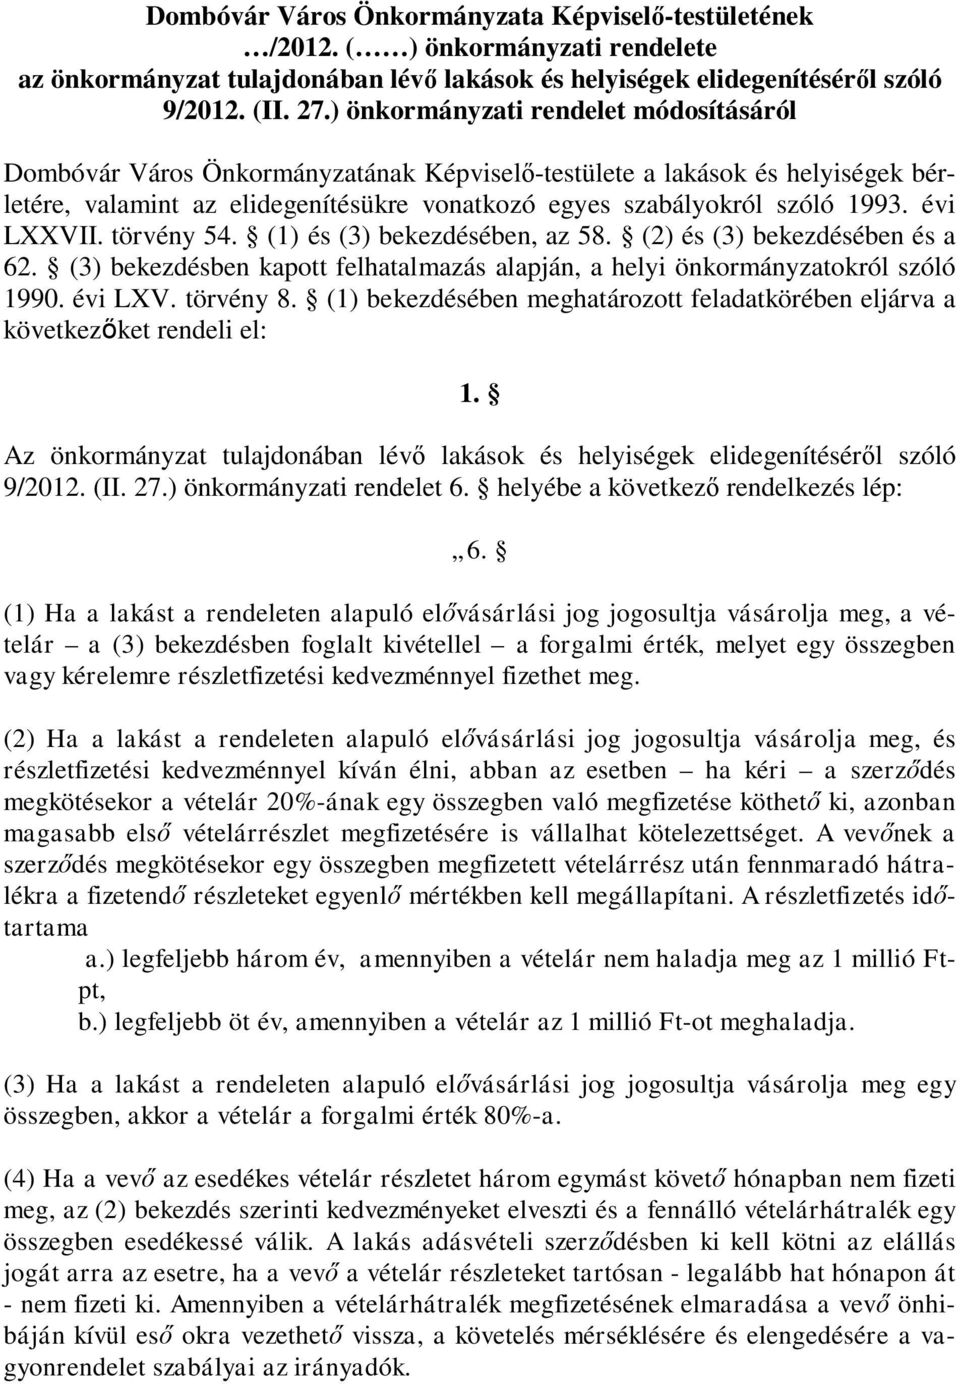 évi LXXVII. törvény 54. (1) és (3) bekezdésében, az 58. (2) és (3) bekezdésében és a 62. (3) bekezdésben kapott felhatalmazás alapján, a helyi önkormányzatokról szóló 1990. évi LXV. törvény 8.